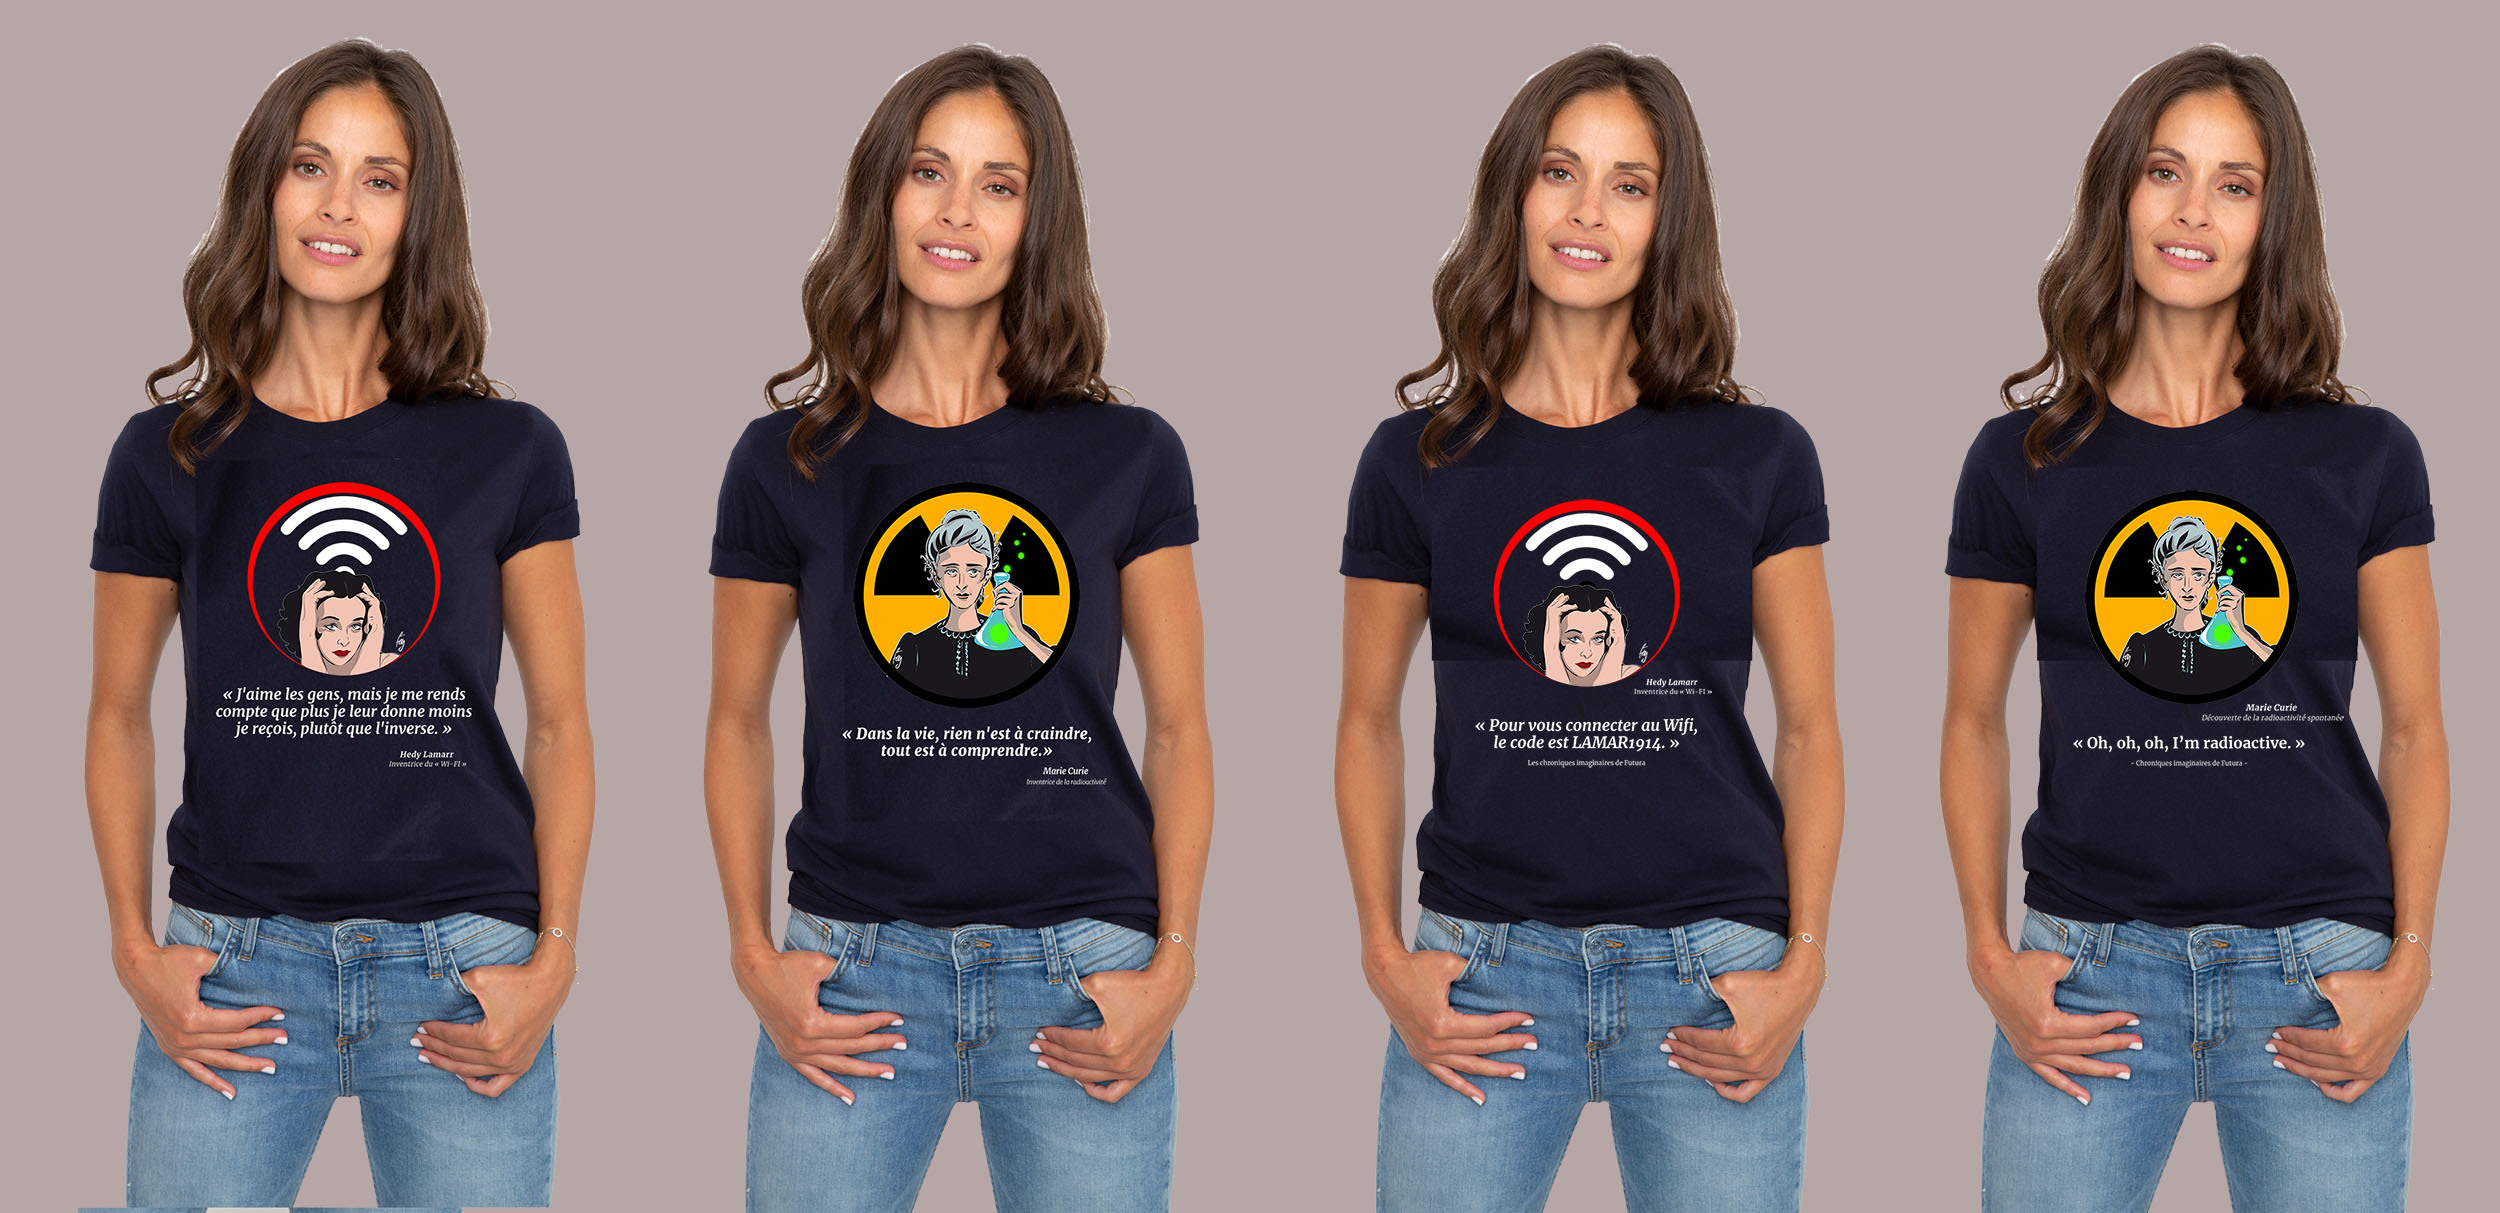 La collection T-shirts femme à retrouver dans la boutique Futura. © Futura